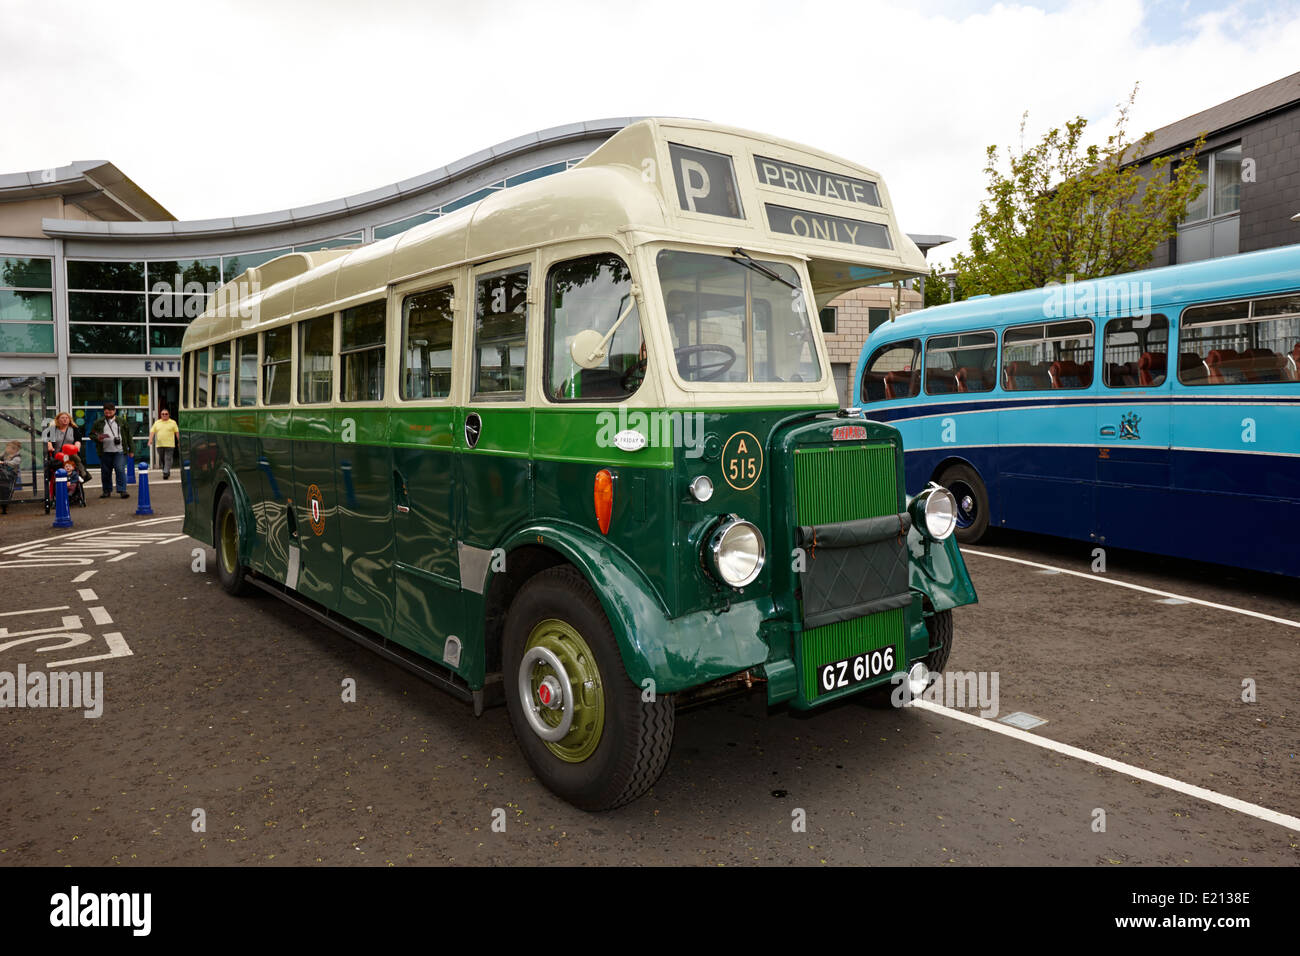 Livrée verte ulster transport leyland tiger bus à Bangor Northern Ireland Banque D'Images